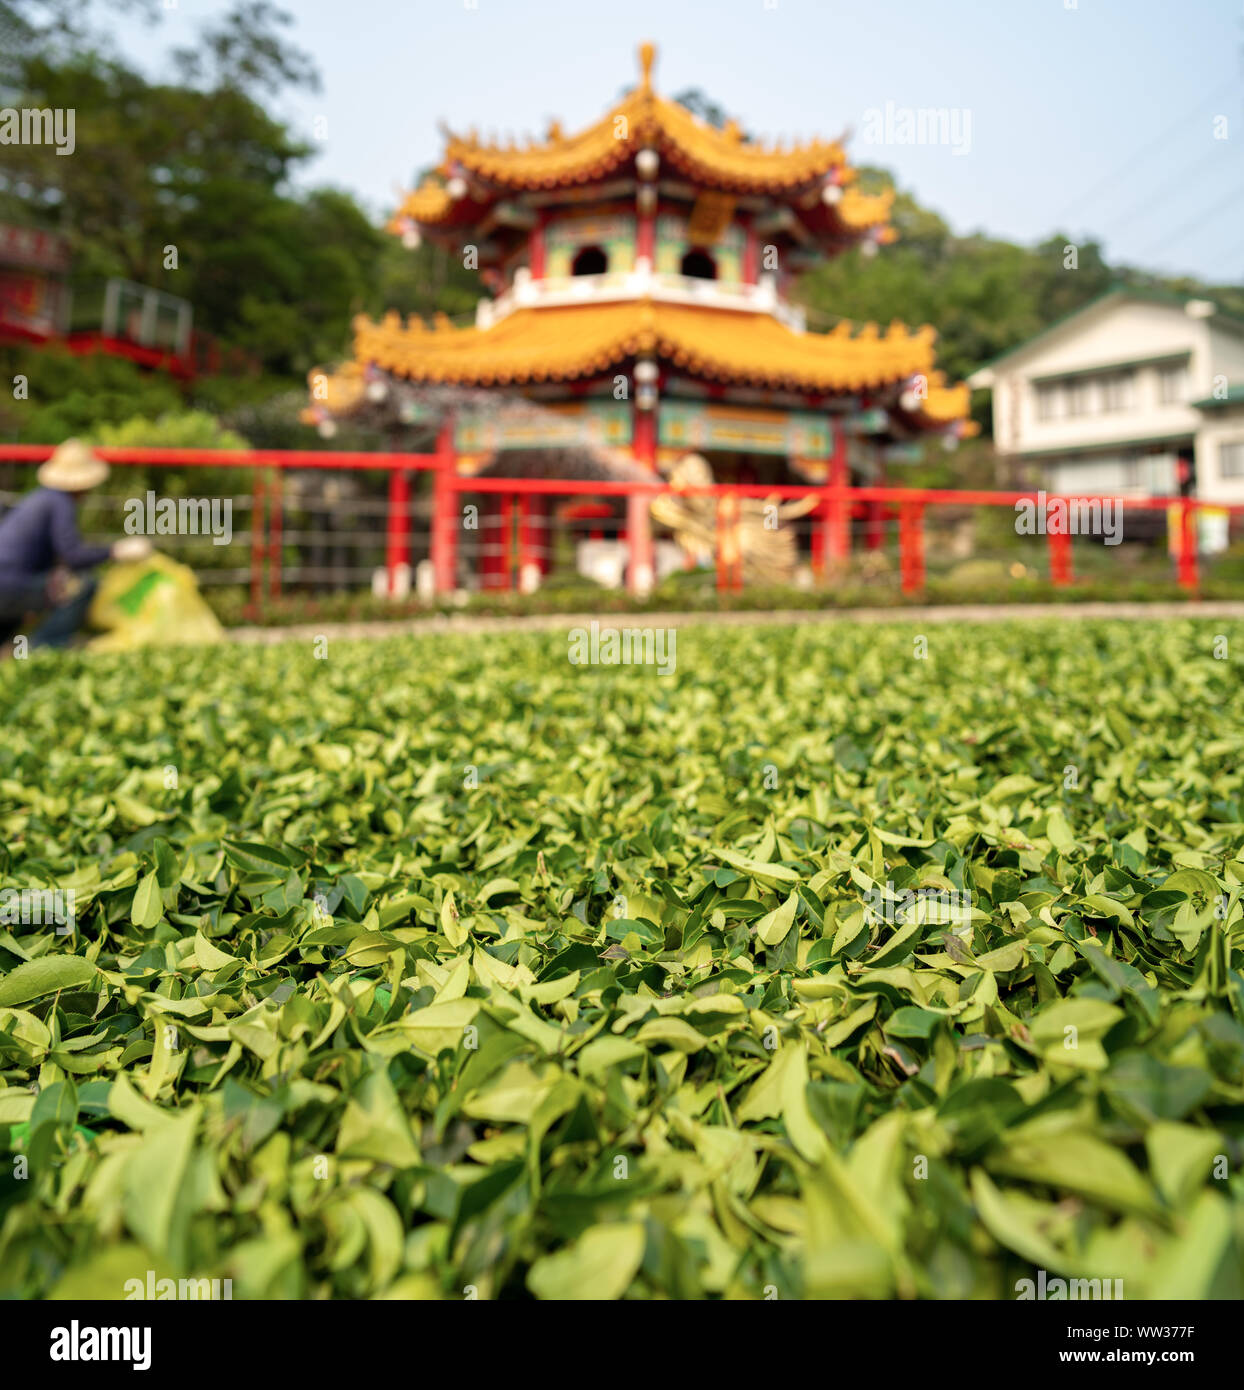 Taipei, Taiwan: frischen Tee Blätter verteilte sich auf dem Boden vor einem chinesischen Tempel in der Sonne zu trocknen. Traditionelle Tee Stockfoto